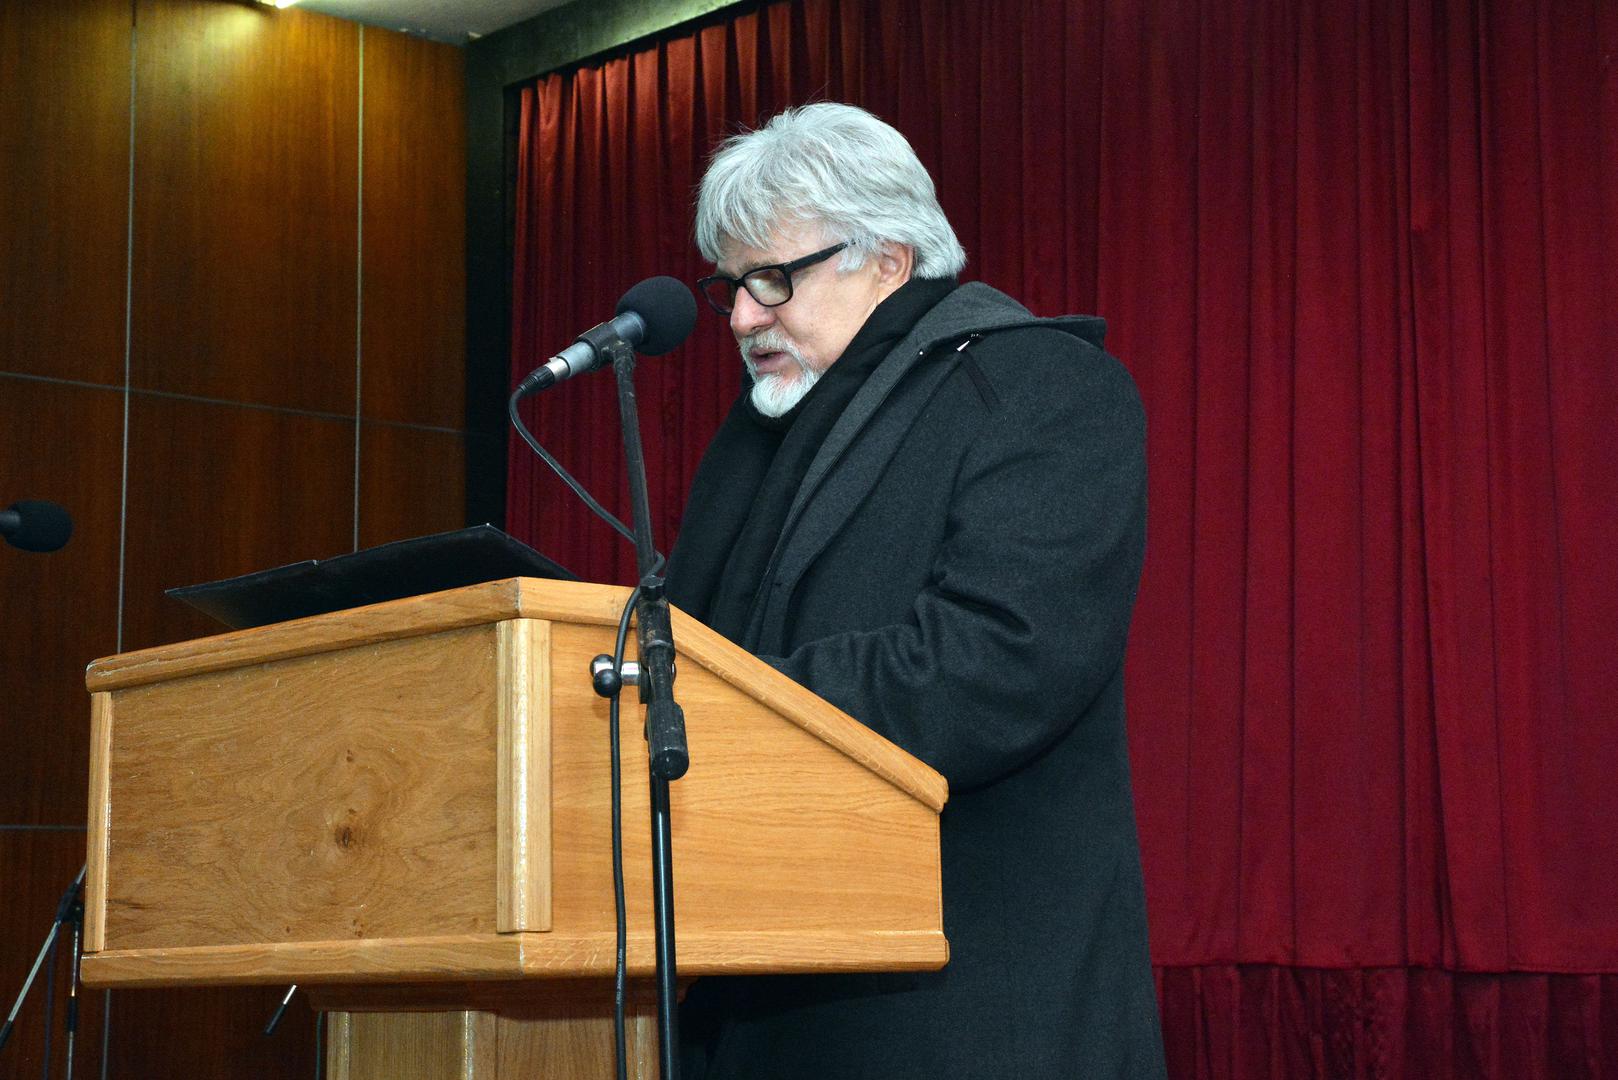 Iljo Benković, koji je zajedno s Gregurevićem pokrenuo filmski festival "Dani hrvatskog filma u Orašju" rekao je kako je iza sebe ostavio brojna vrijedna djela.